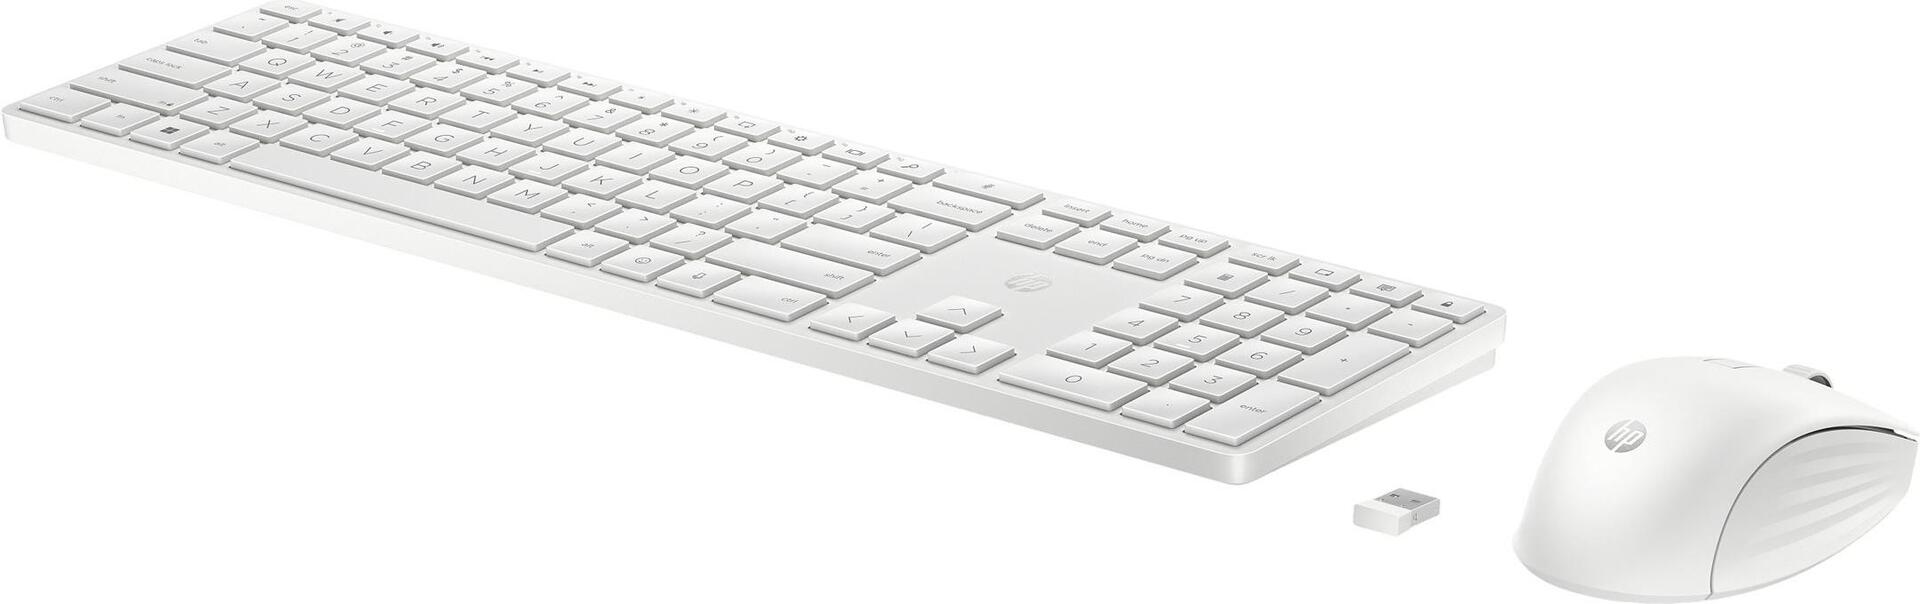 HP 655 Tastatur-und-Maus-Set (860P8AA#ABD)